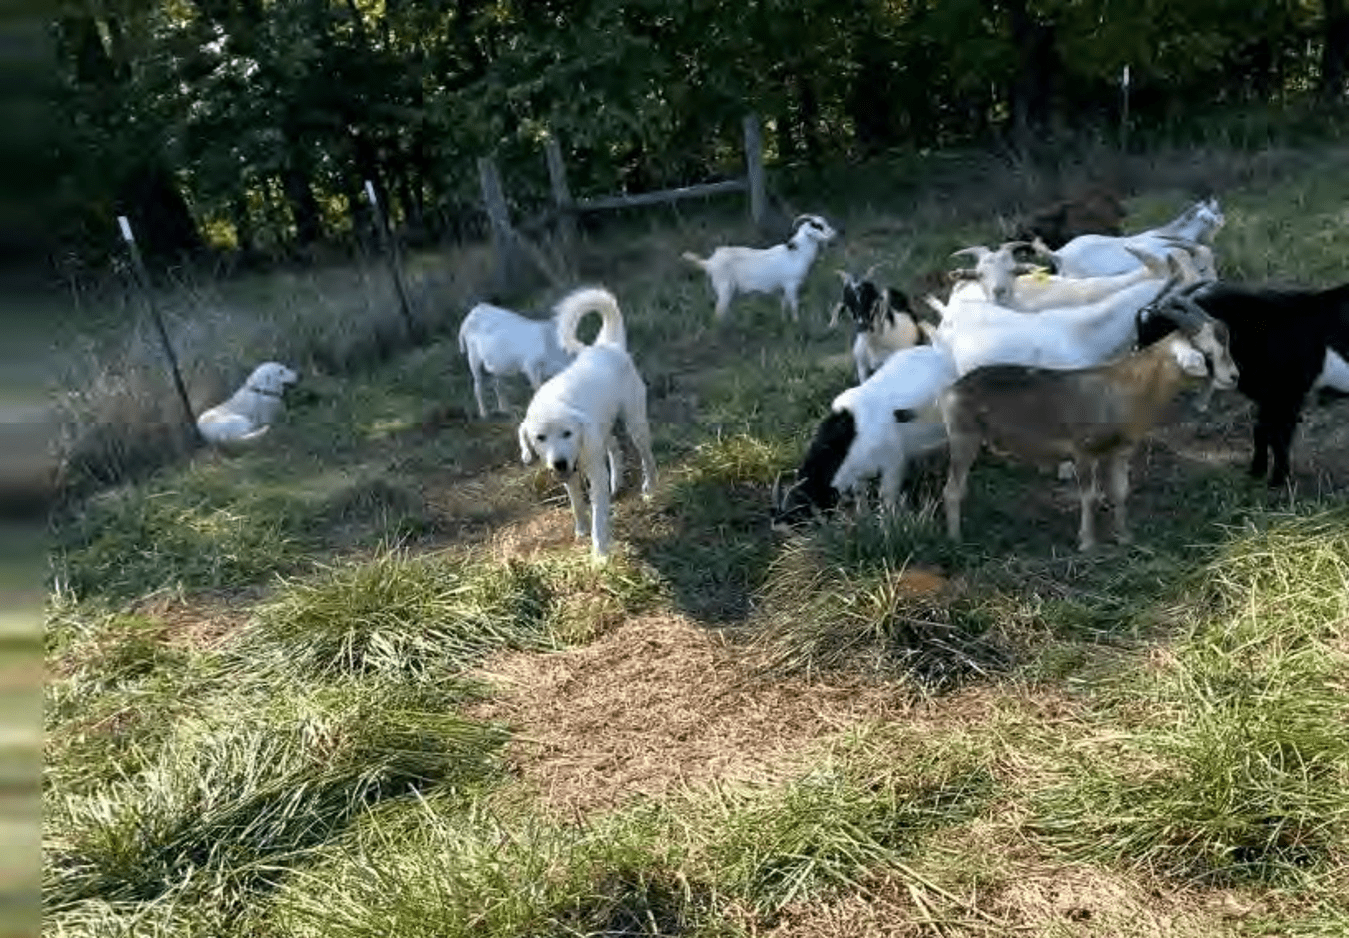 Herding dog in goat pasture.